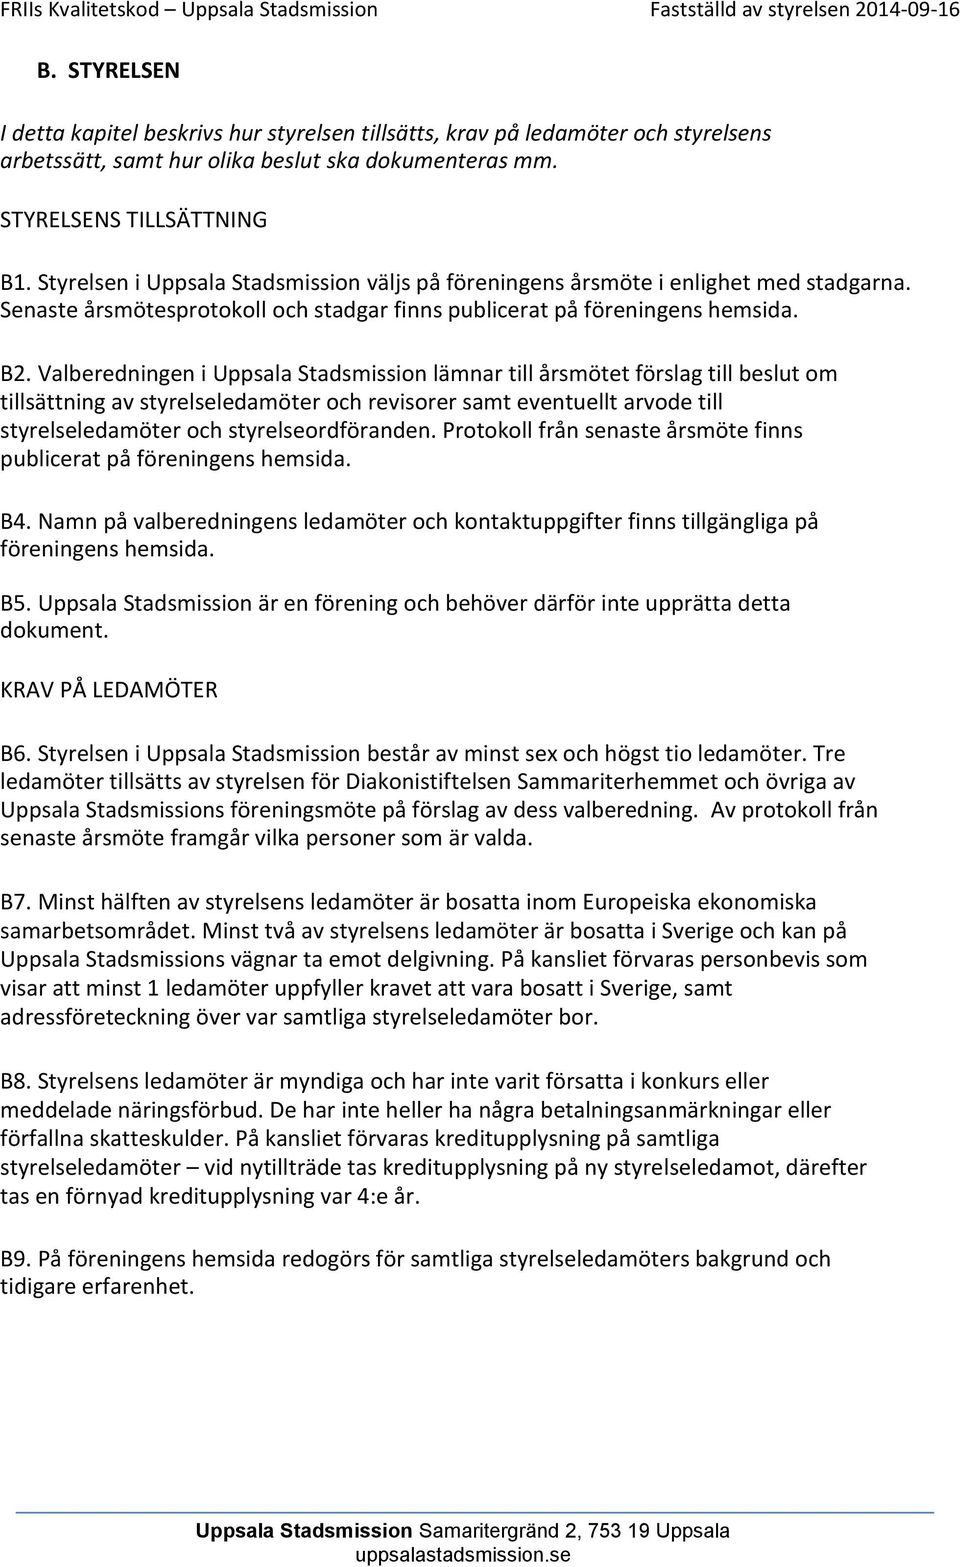 Valberedningen i Uppsala Stadsmission lämnar till årsmötet förslag till beslut om tillsättning av styrelseledamöter och revisorer samt eventuellt arvode till styrelseledamöter och styrelseordföranden.